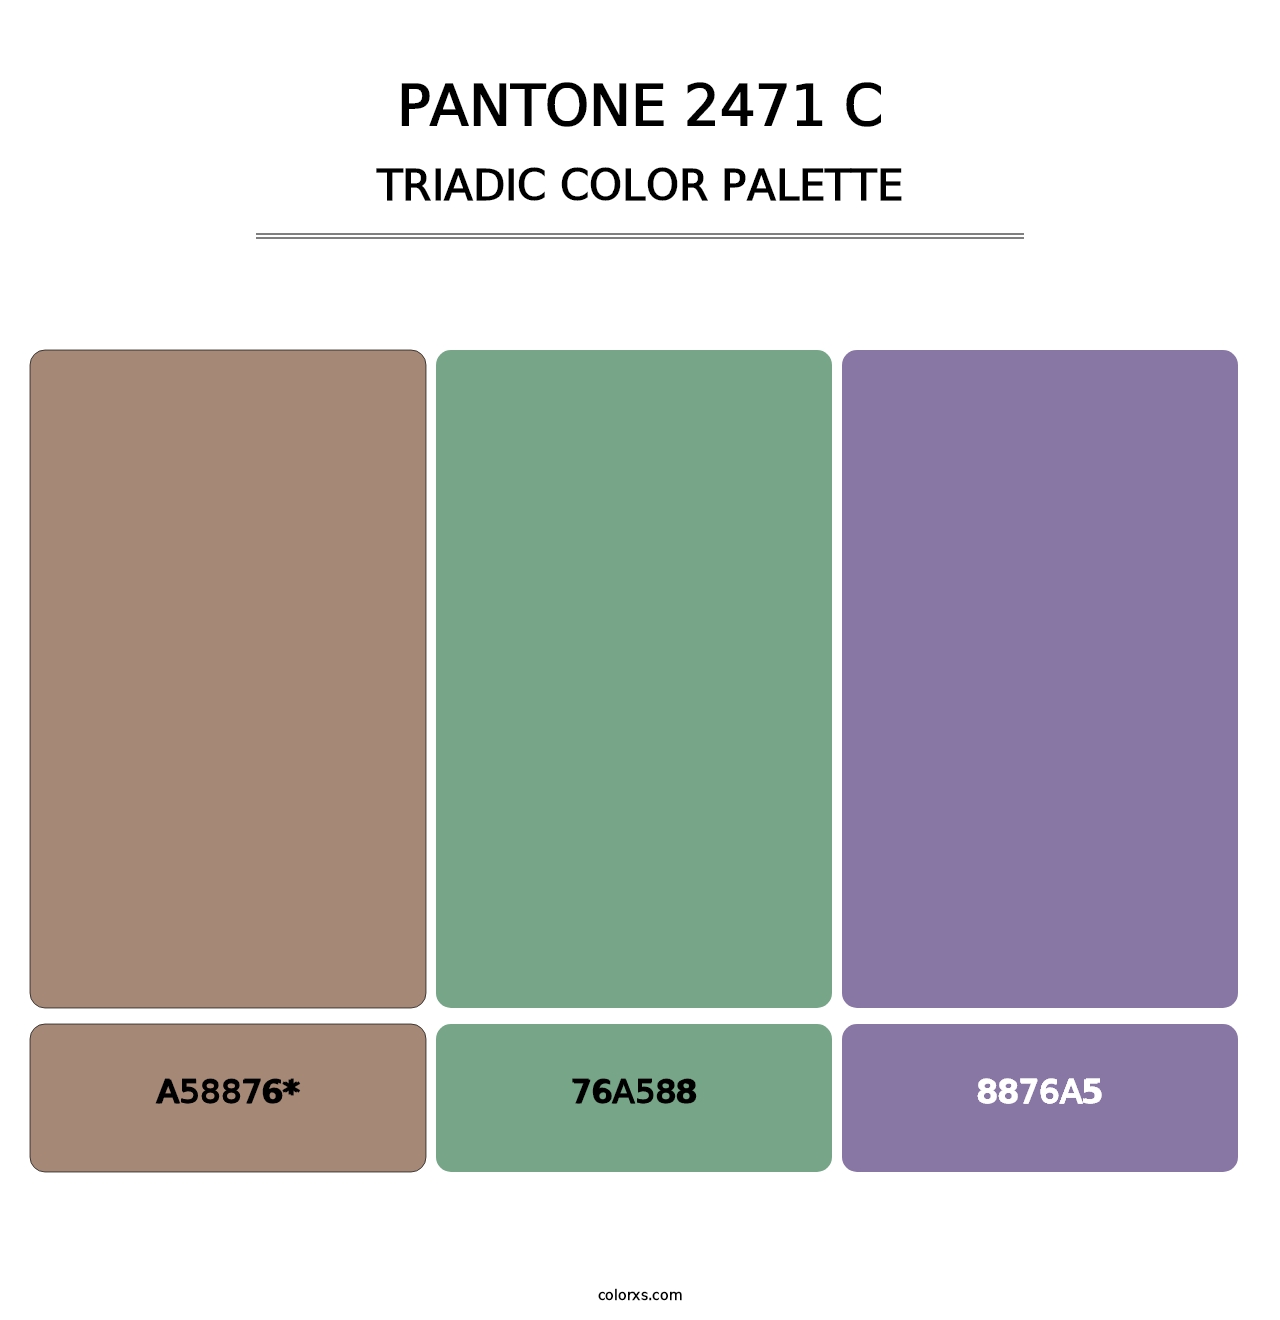 PANTONE 2471 C - Triadic Color Palette